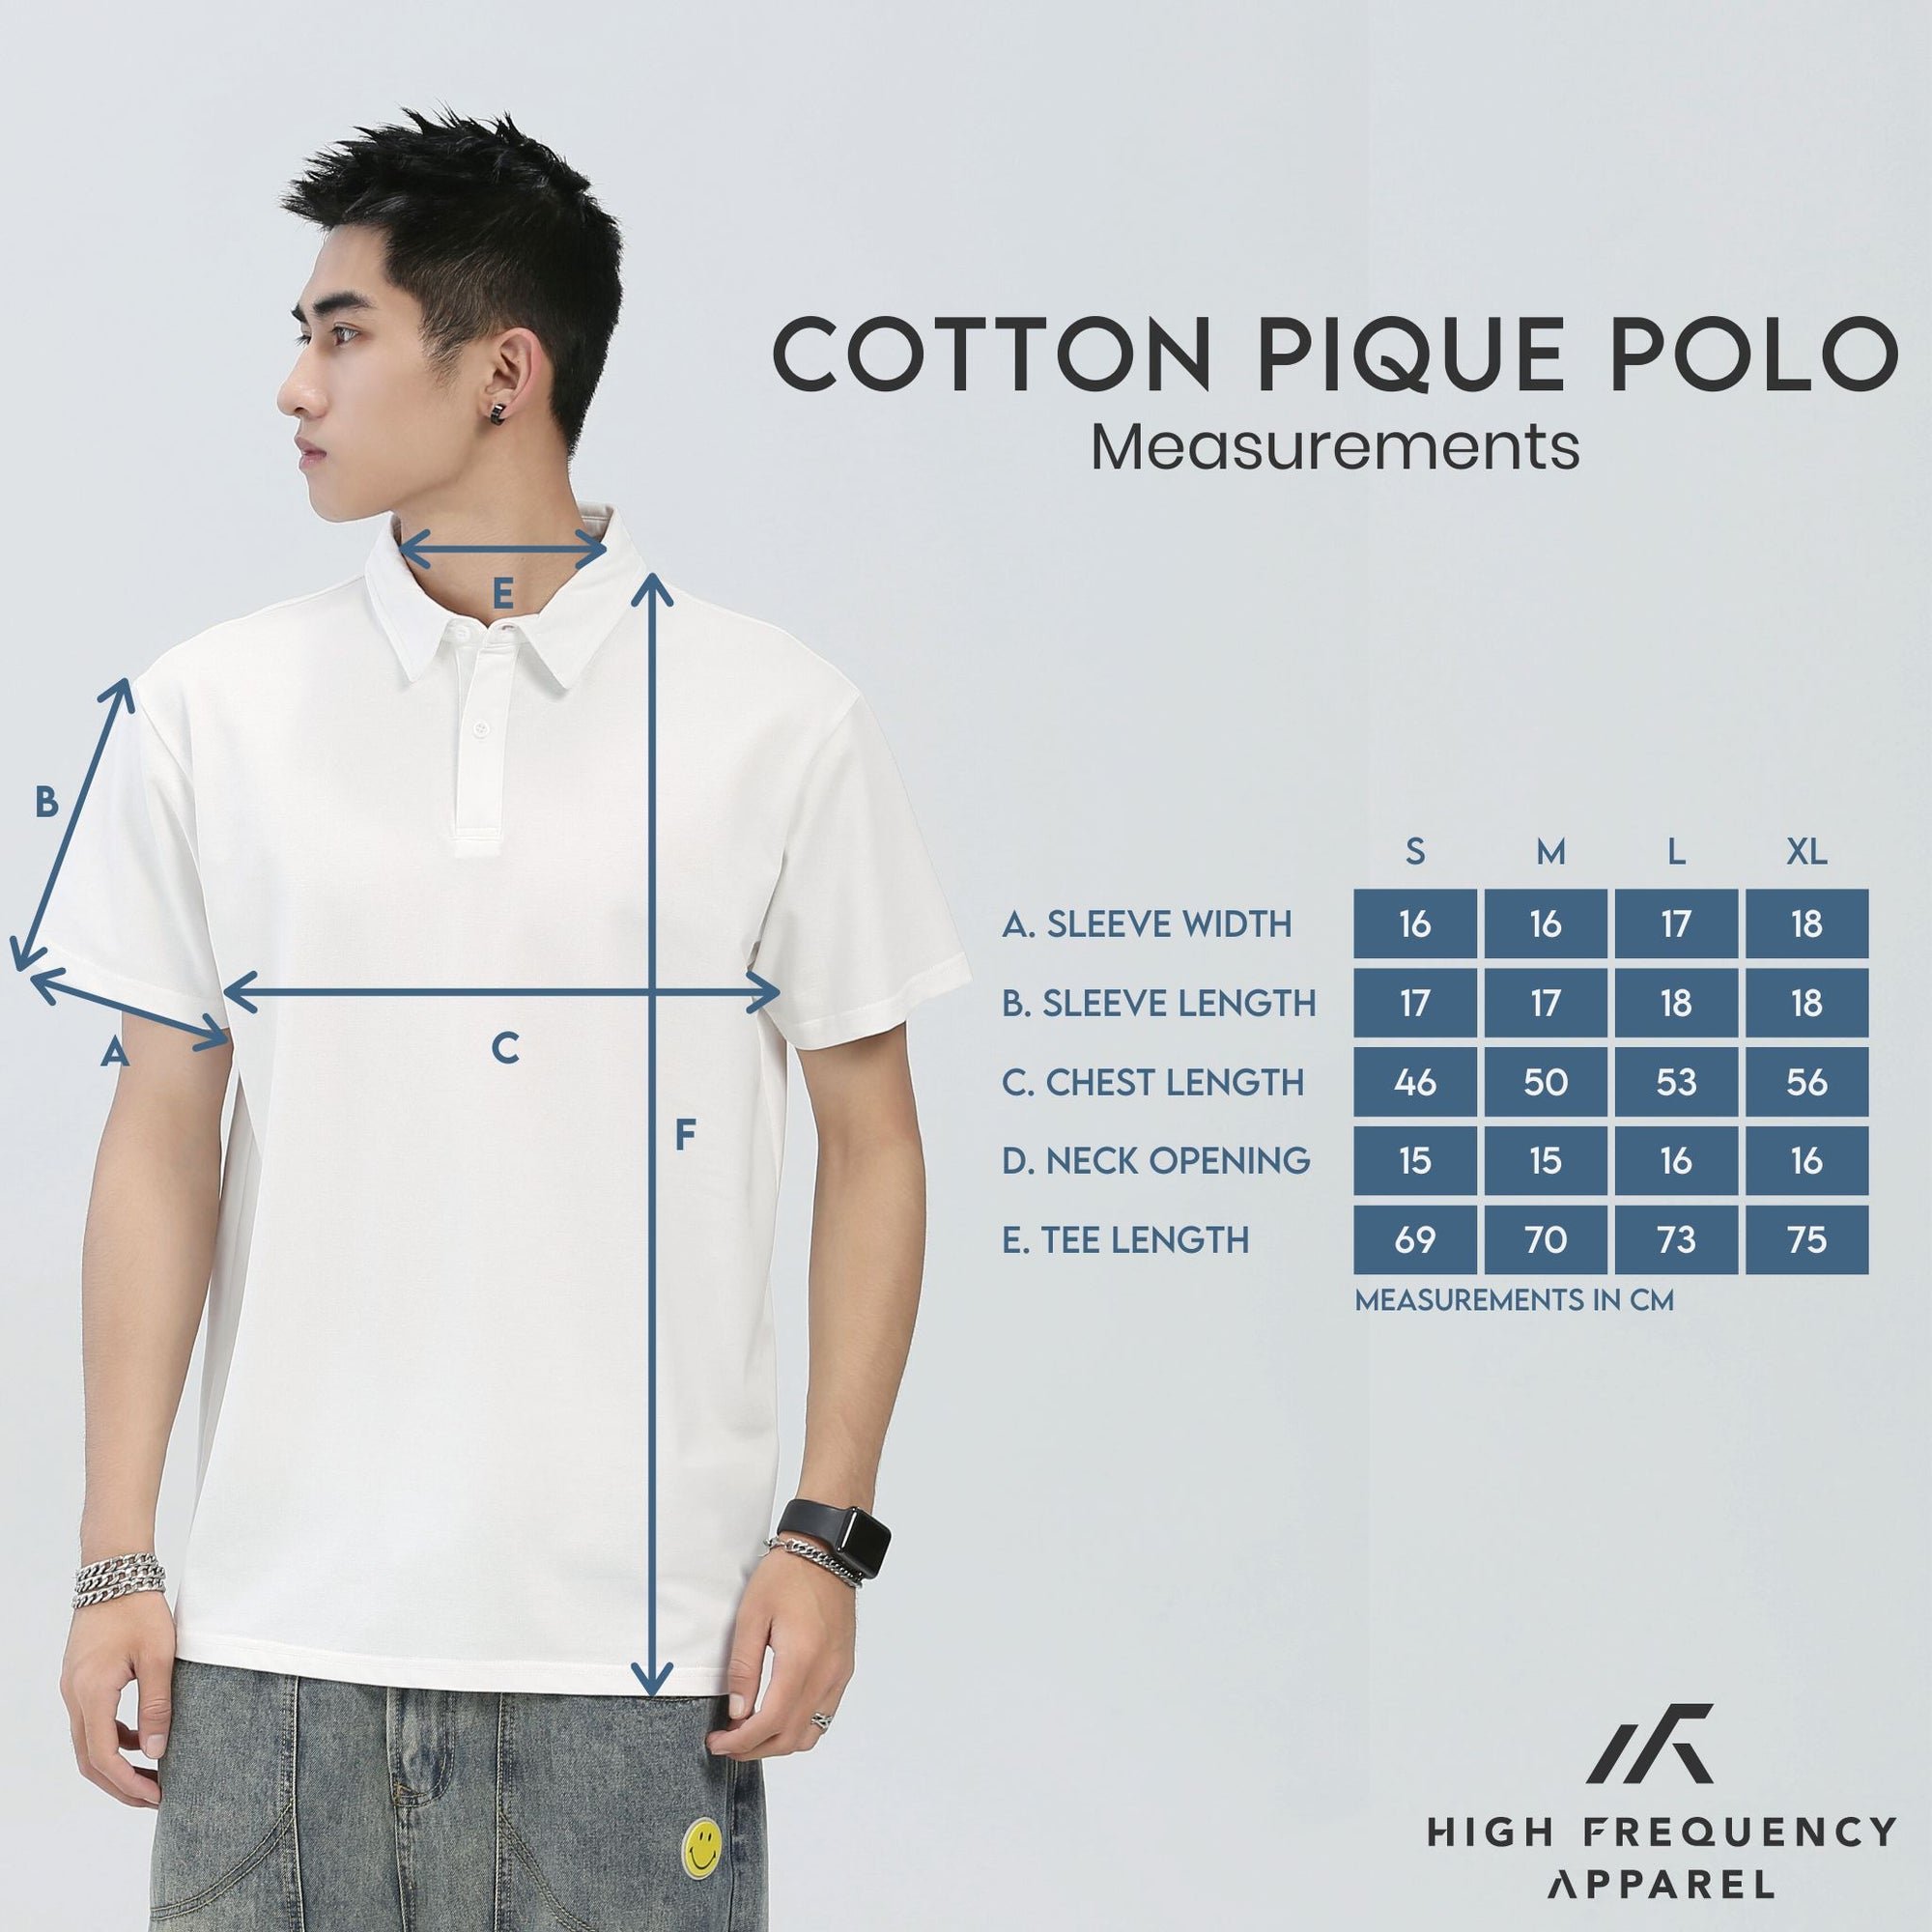 Cotton Pique Polo